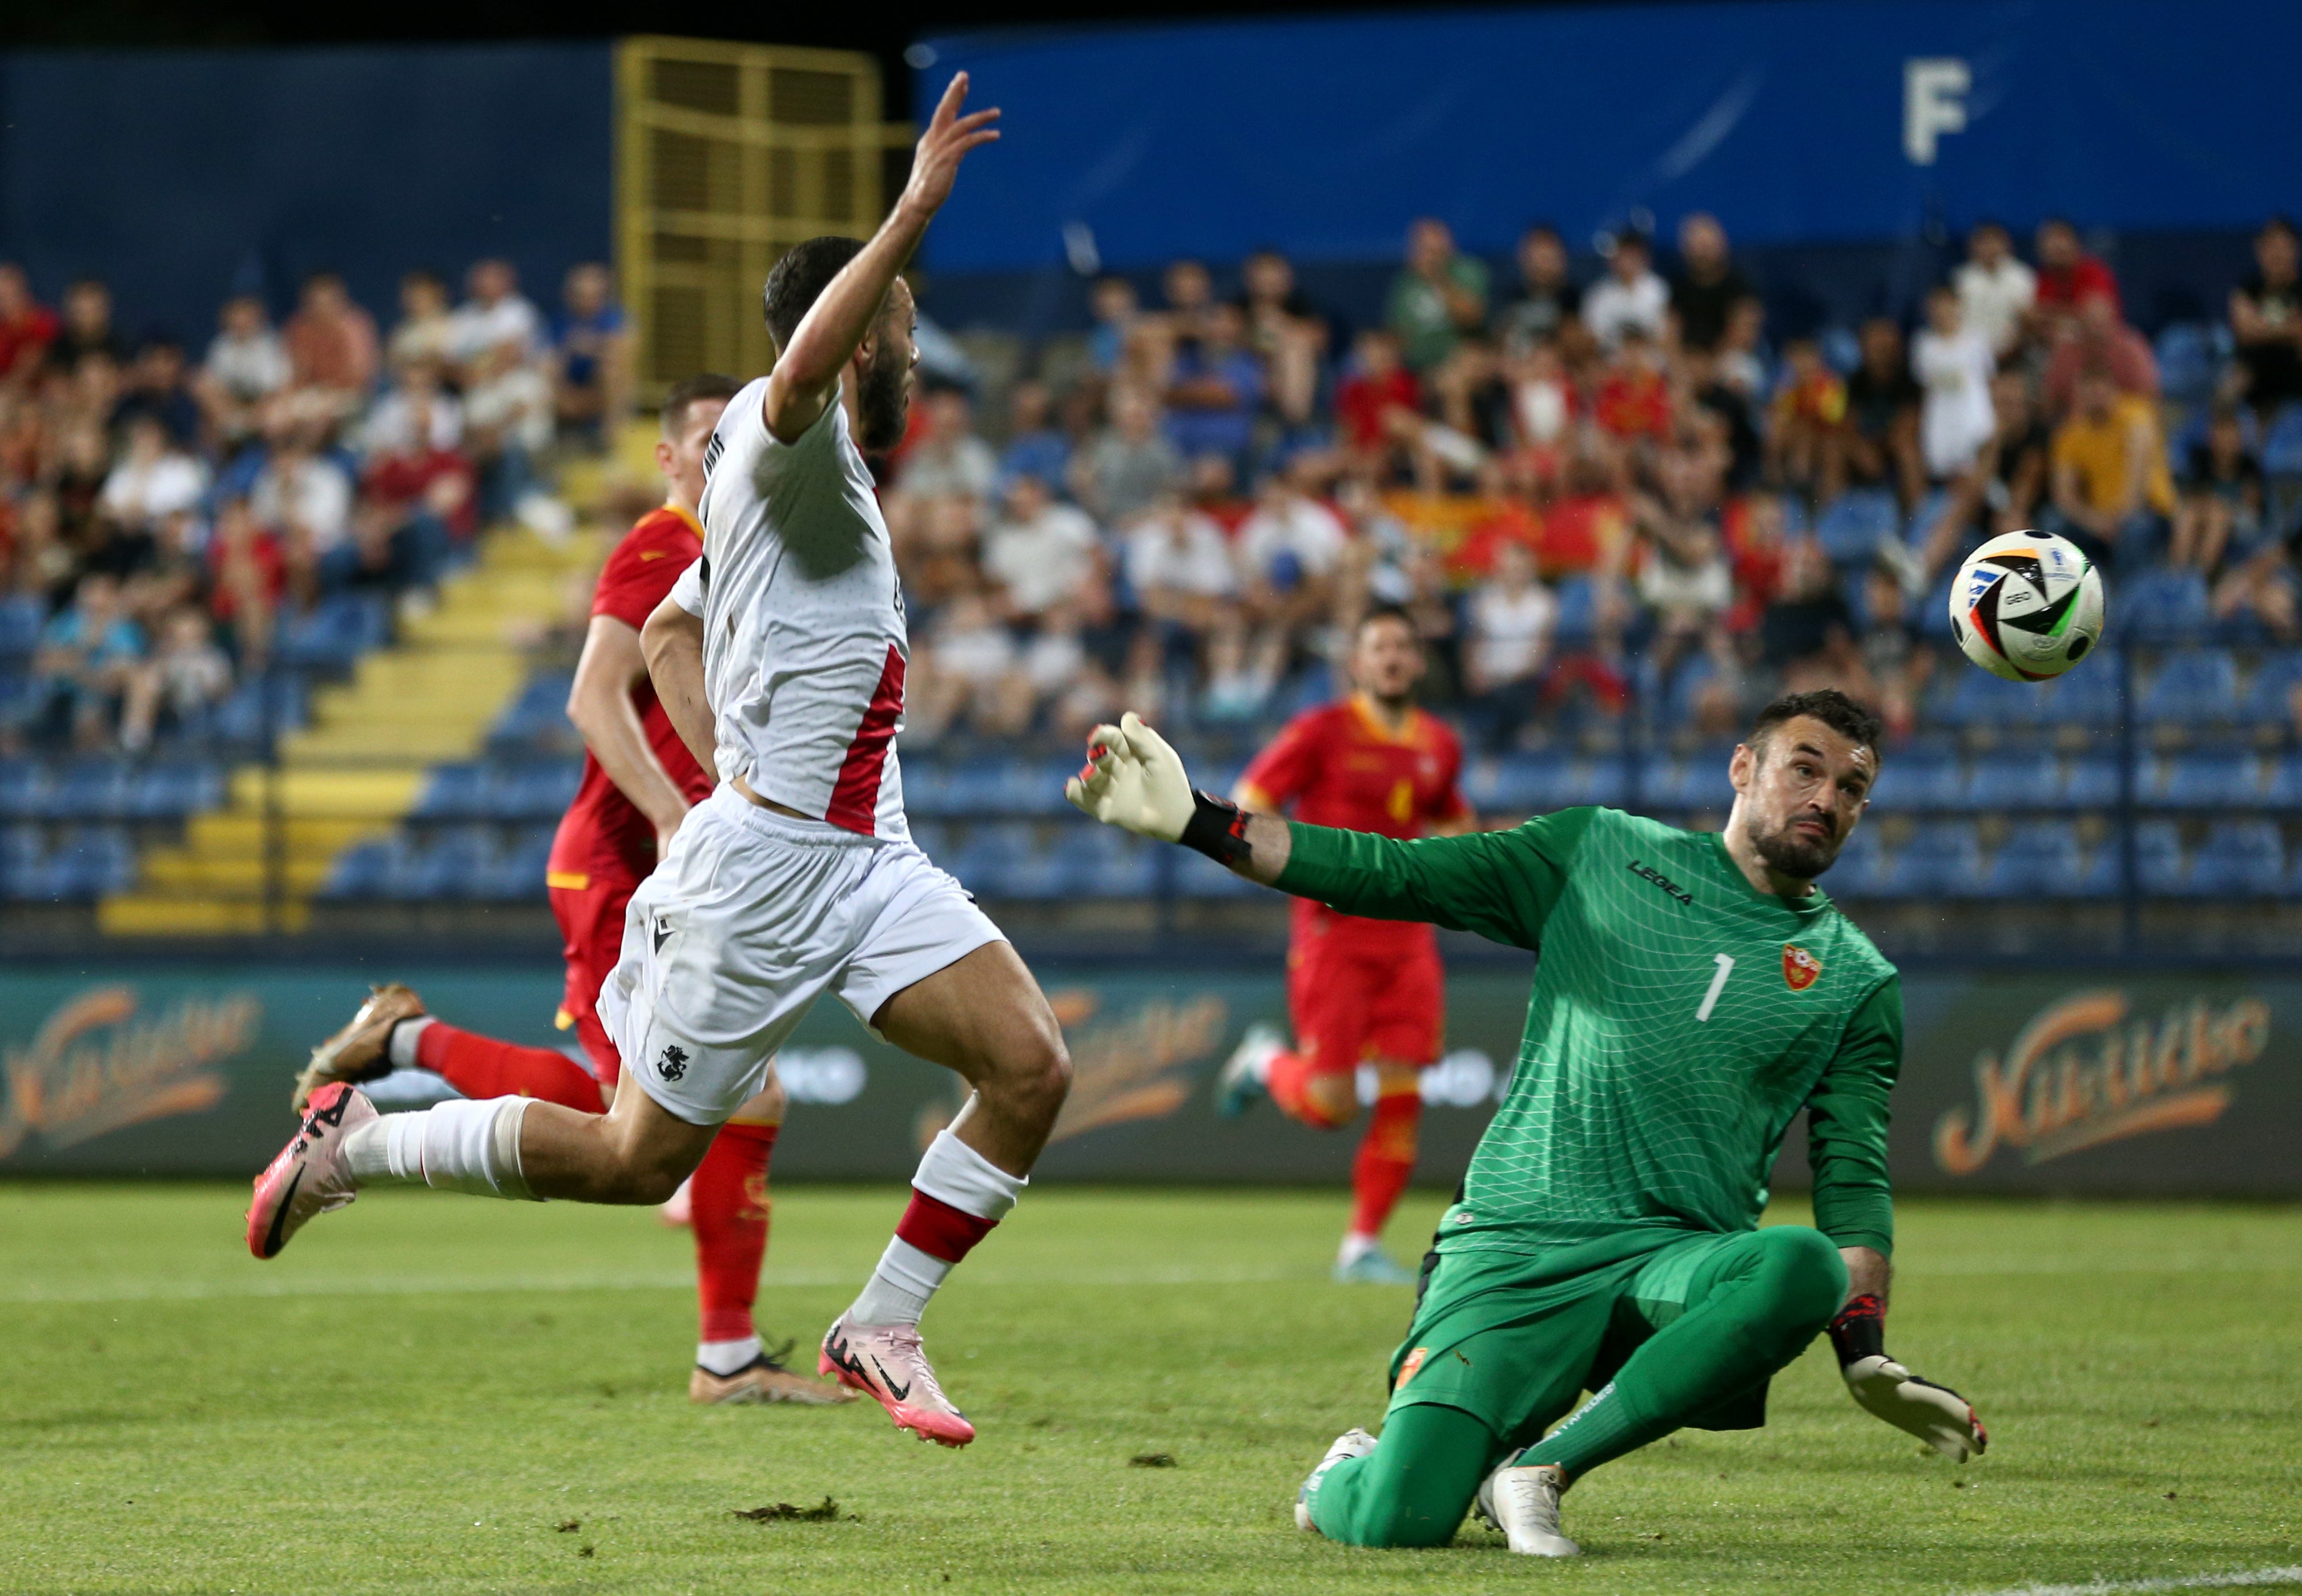 Mikautadze scored for Georgia ahead of the Euros